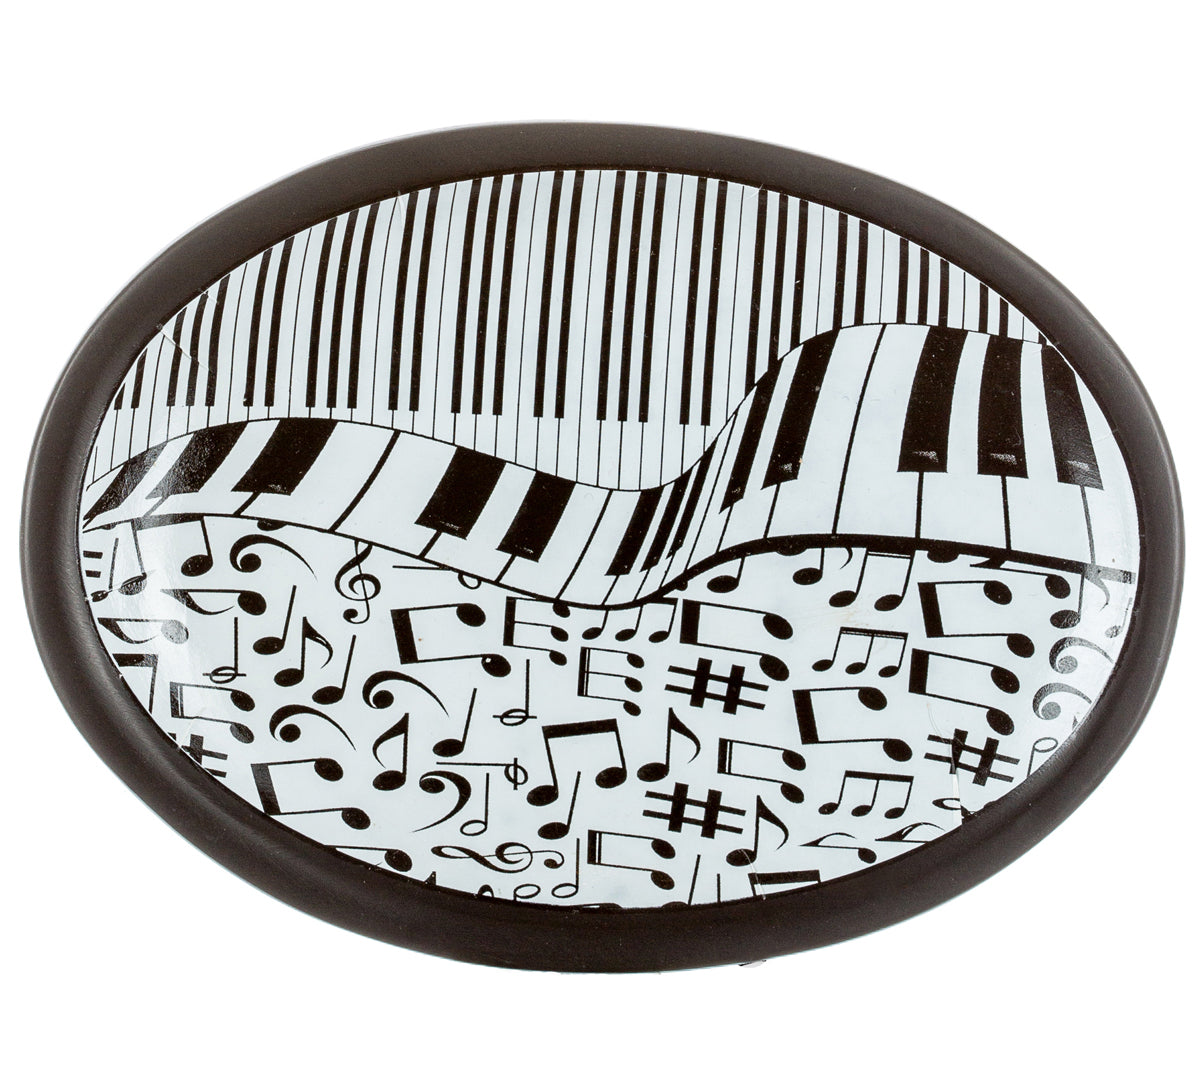 Music Piano Soap Dish